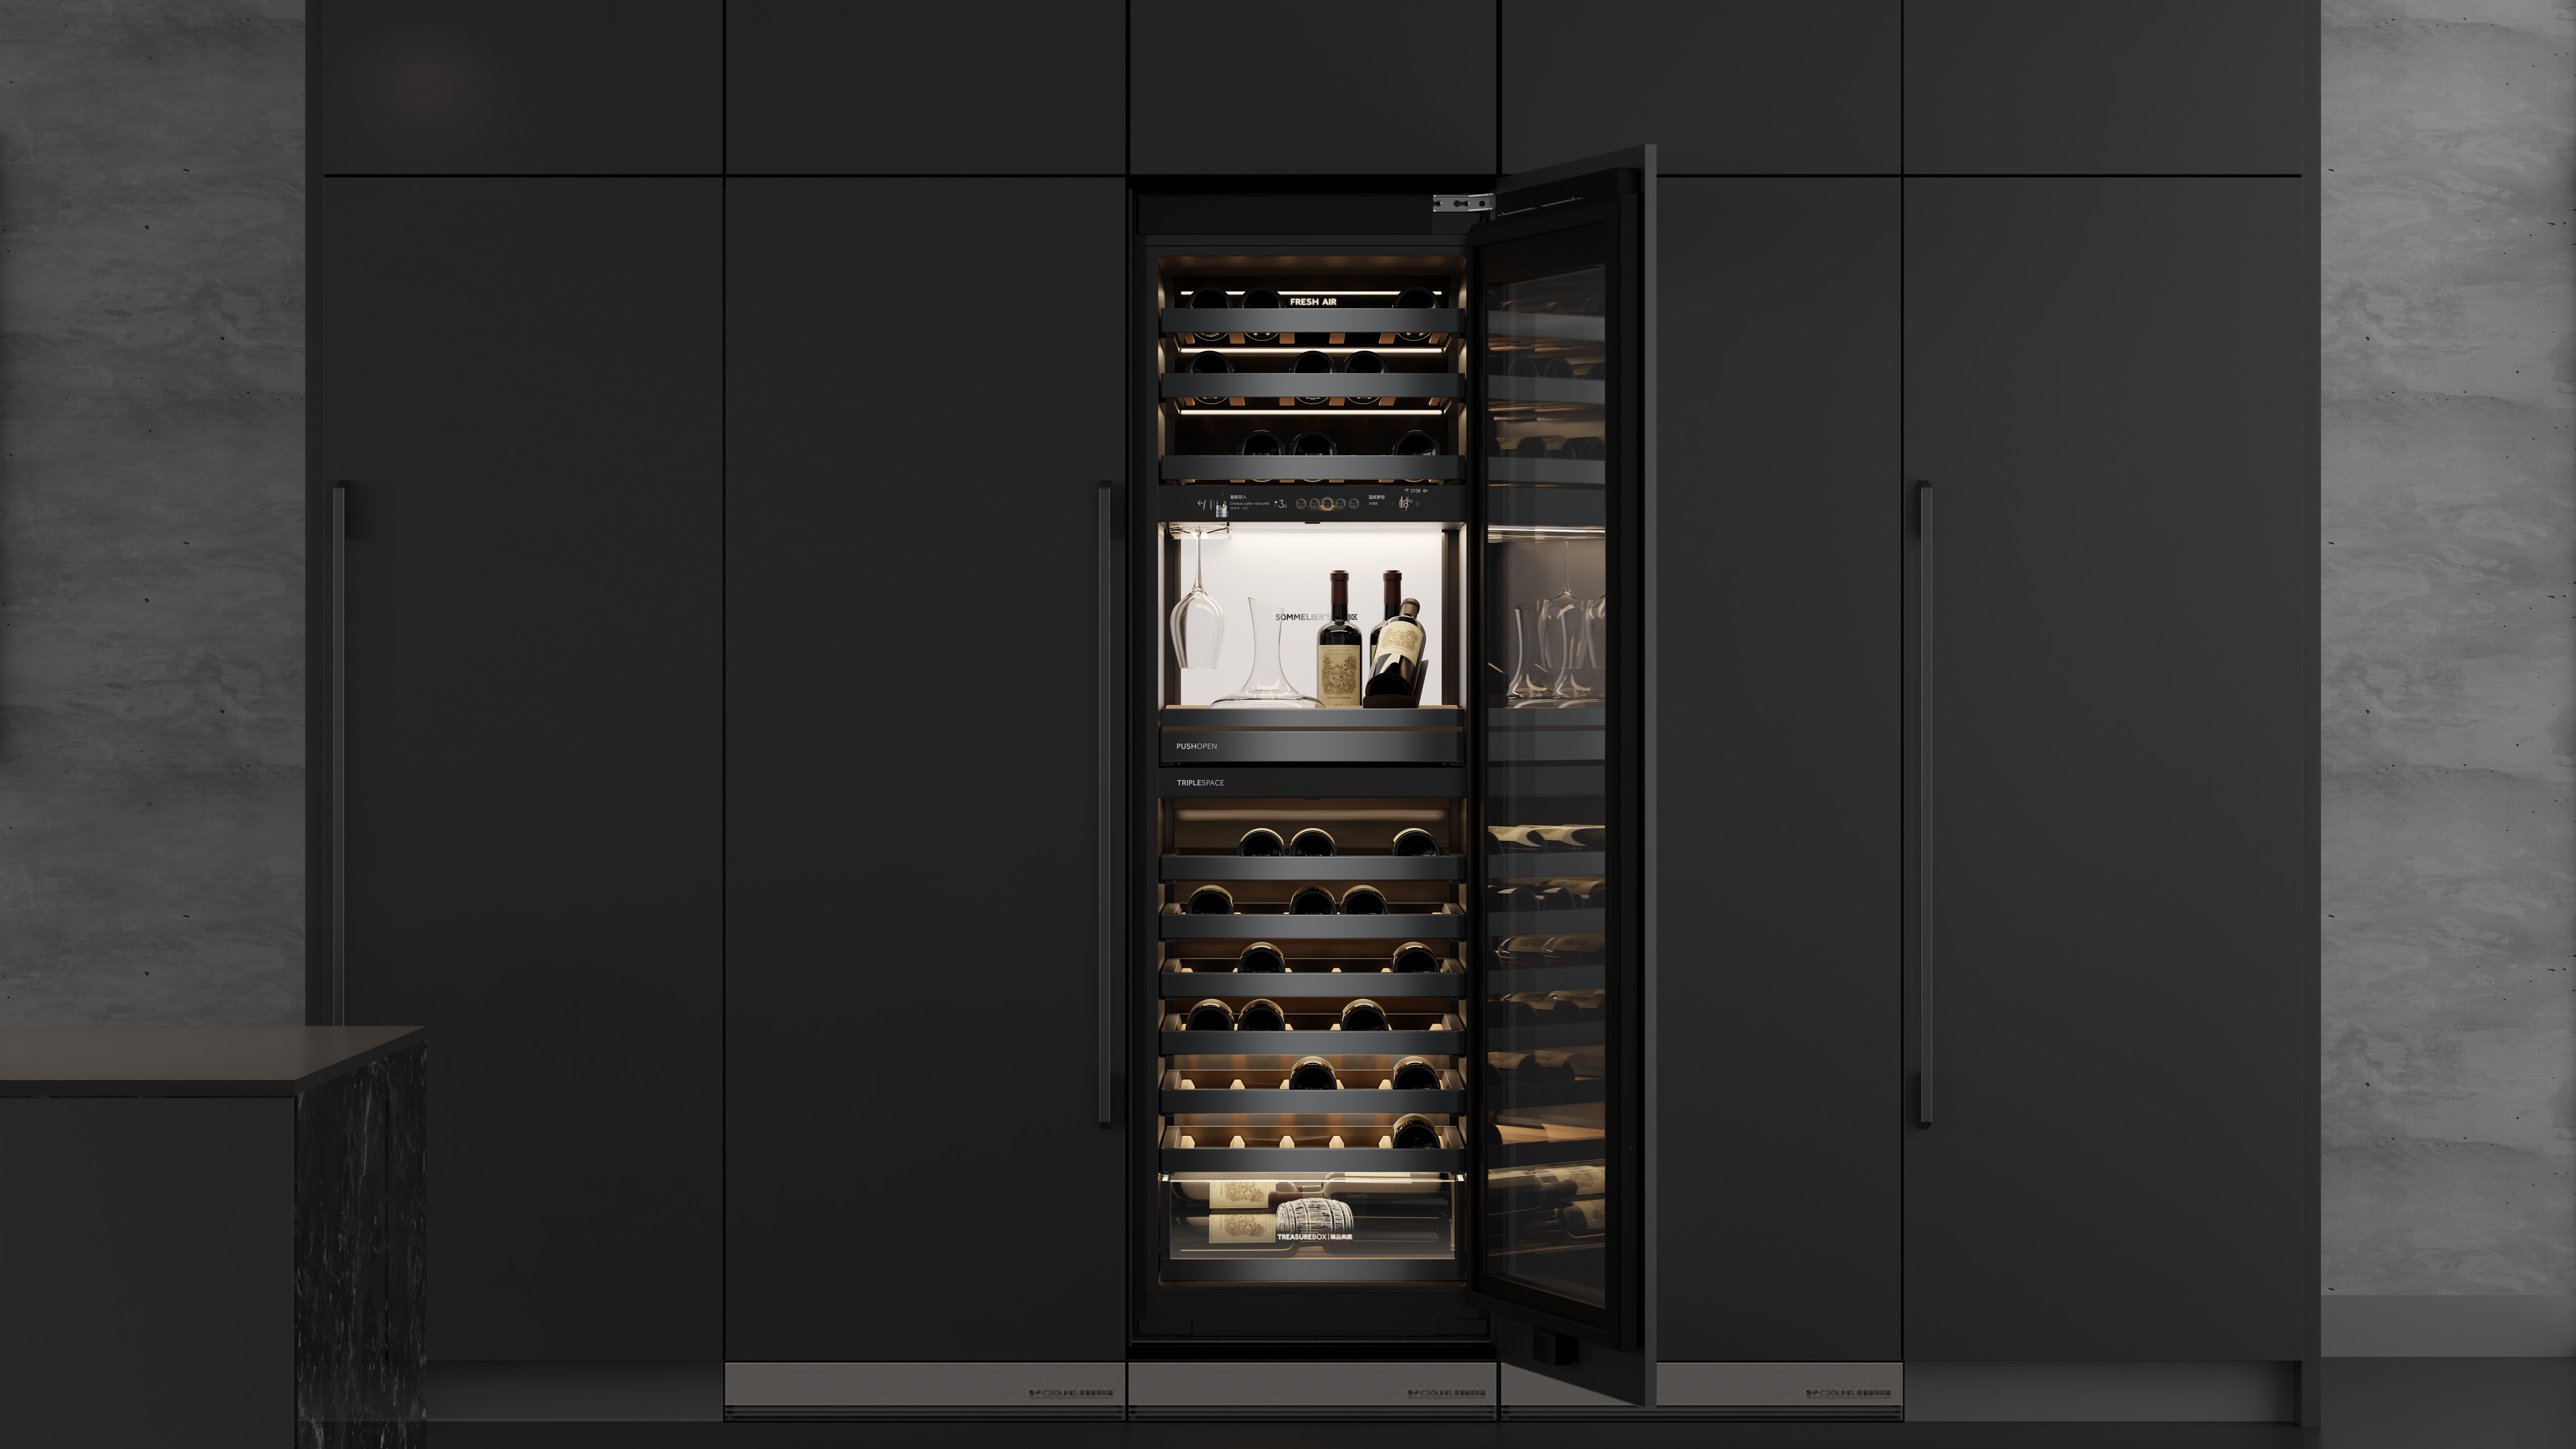 Casarte Built-in Wine Cooler